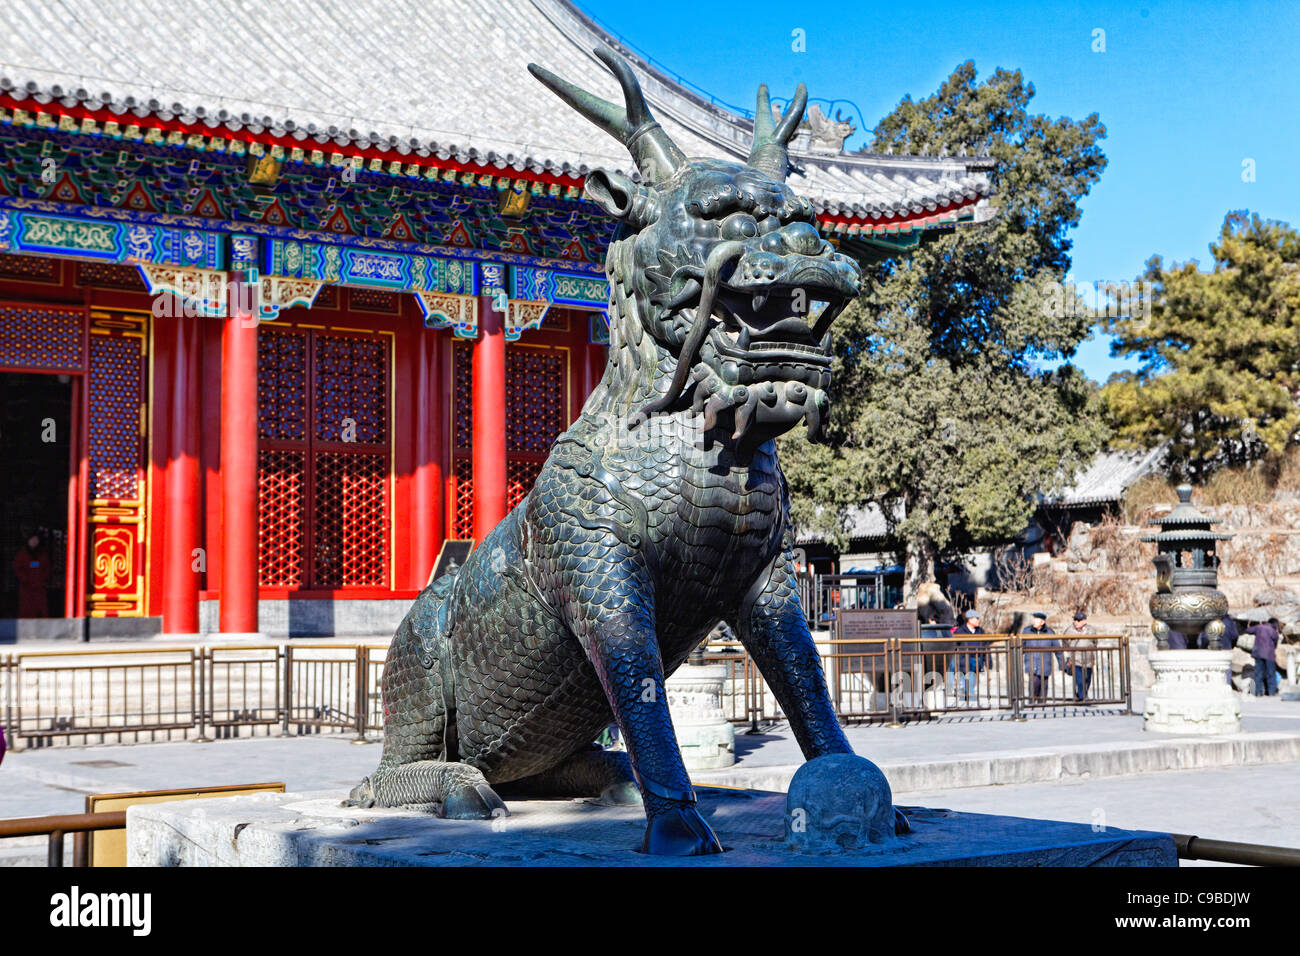 Stataue d'une créature chimérique chinois, Qilin, Summer Palace, Beijing Chine Banque D'Images